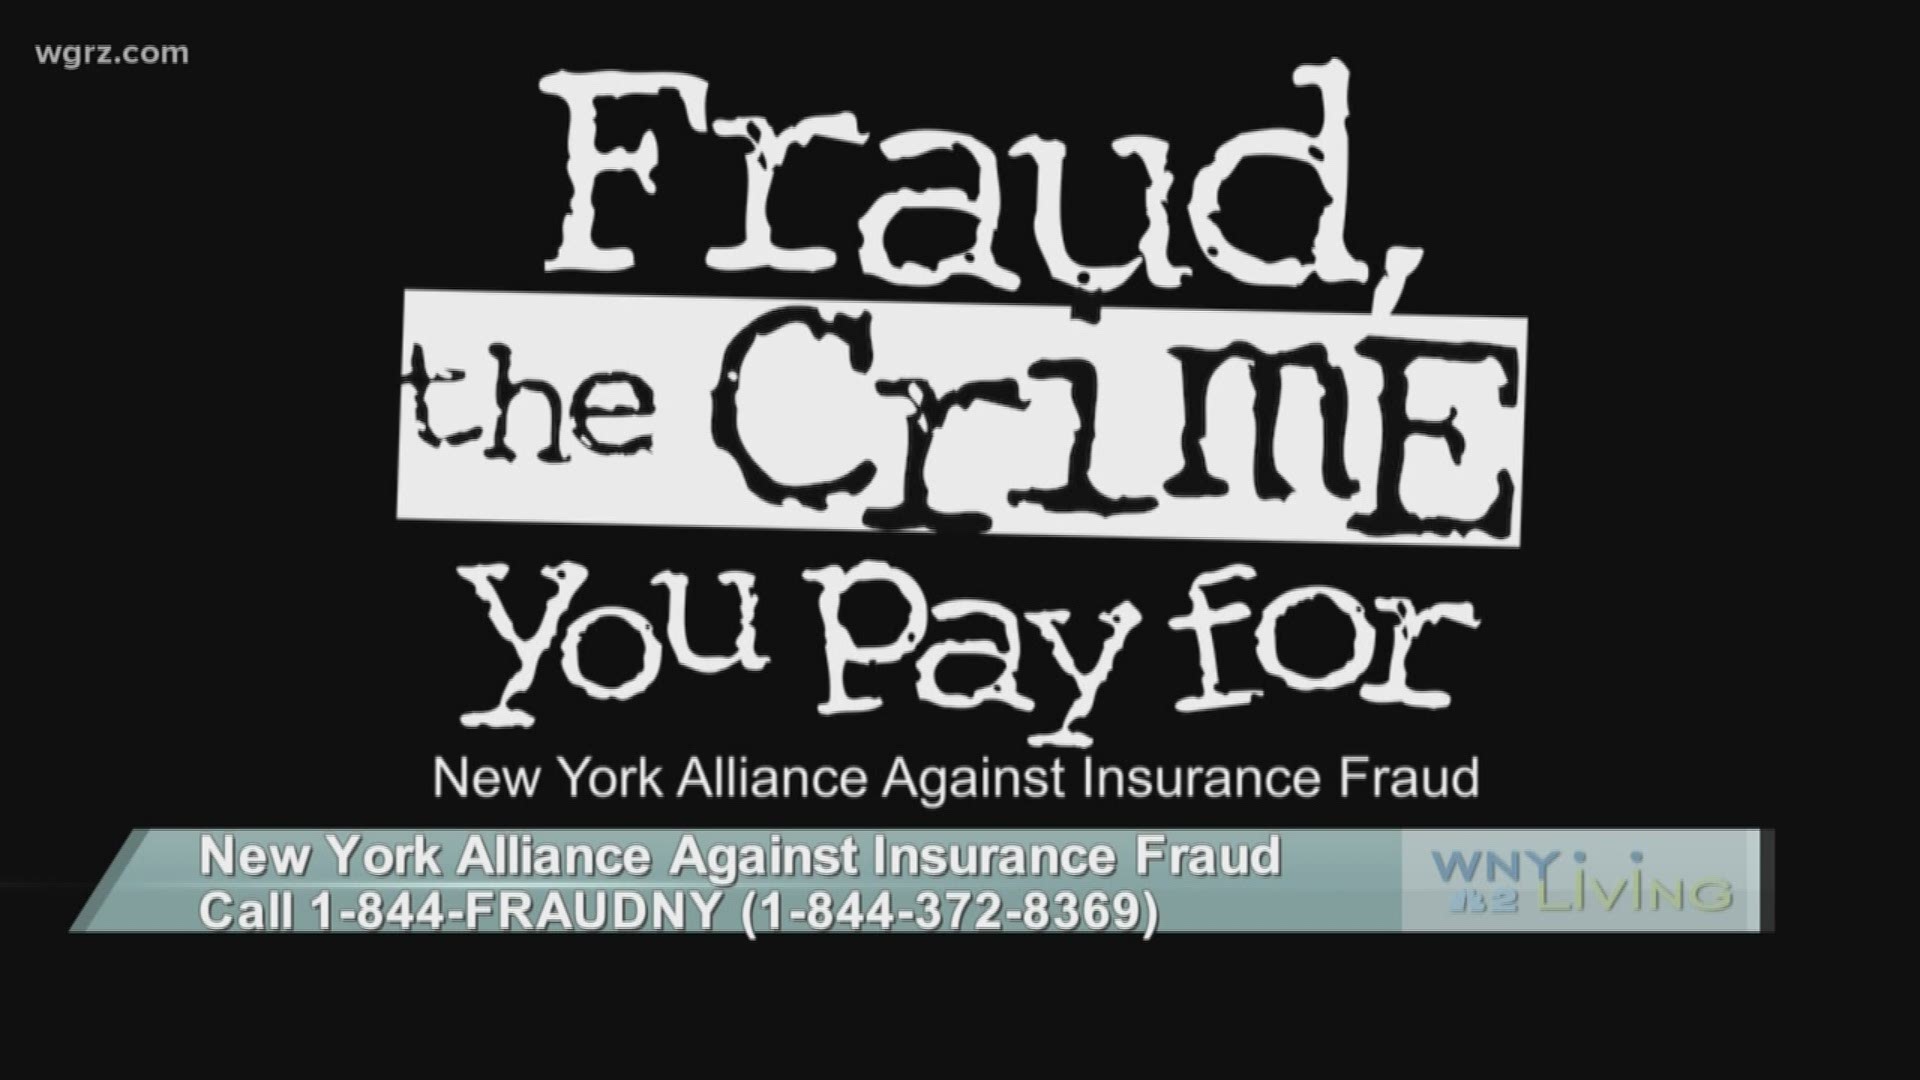 WNY Living - June 15 - New York Alliance Against Insurance Fraud (SPONSORED CONTENT)